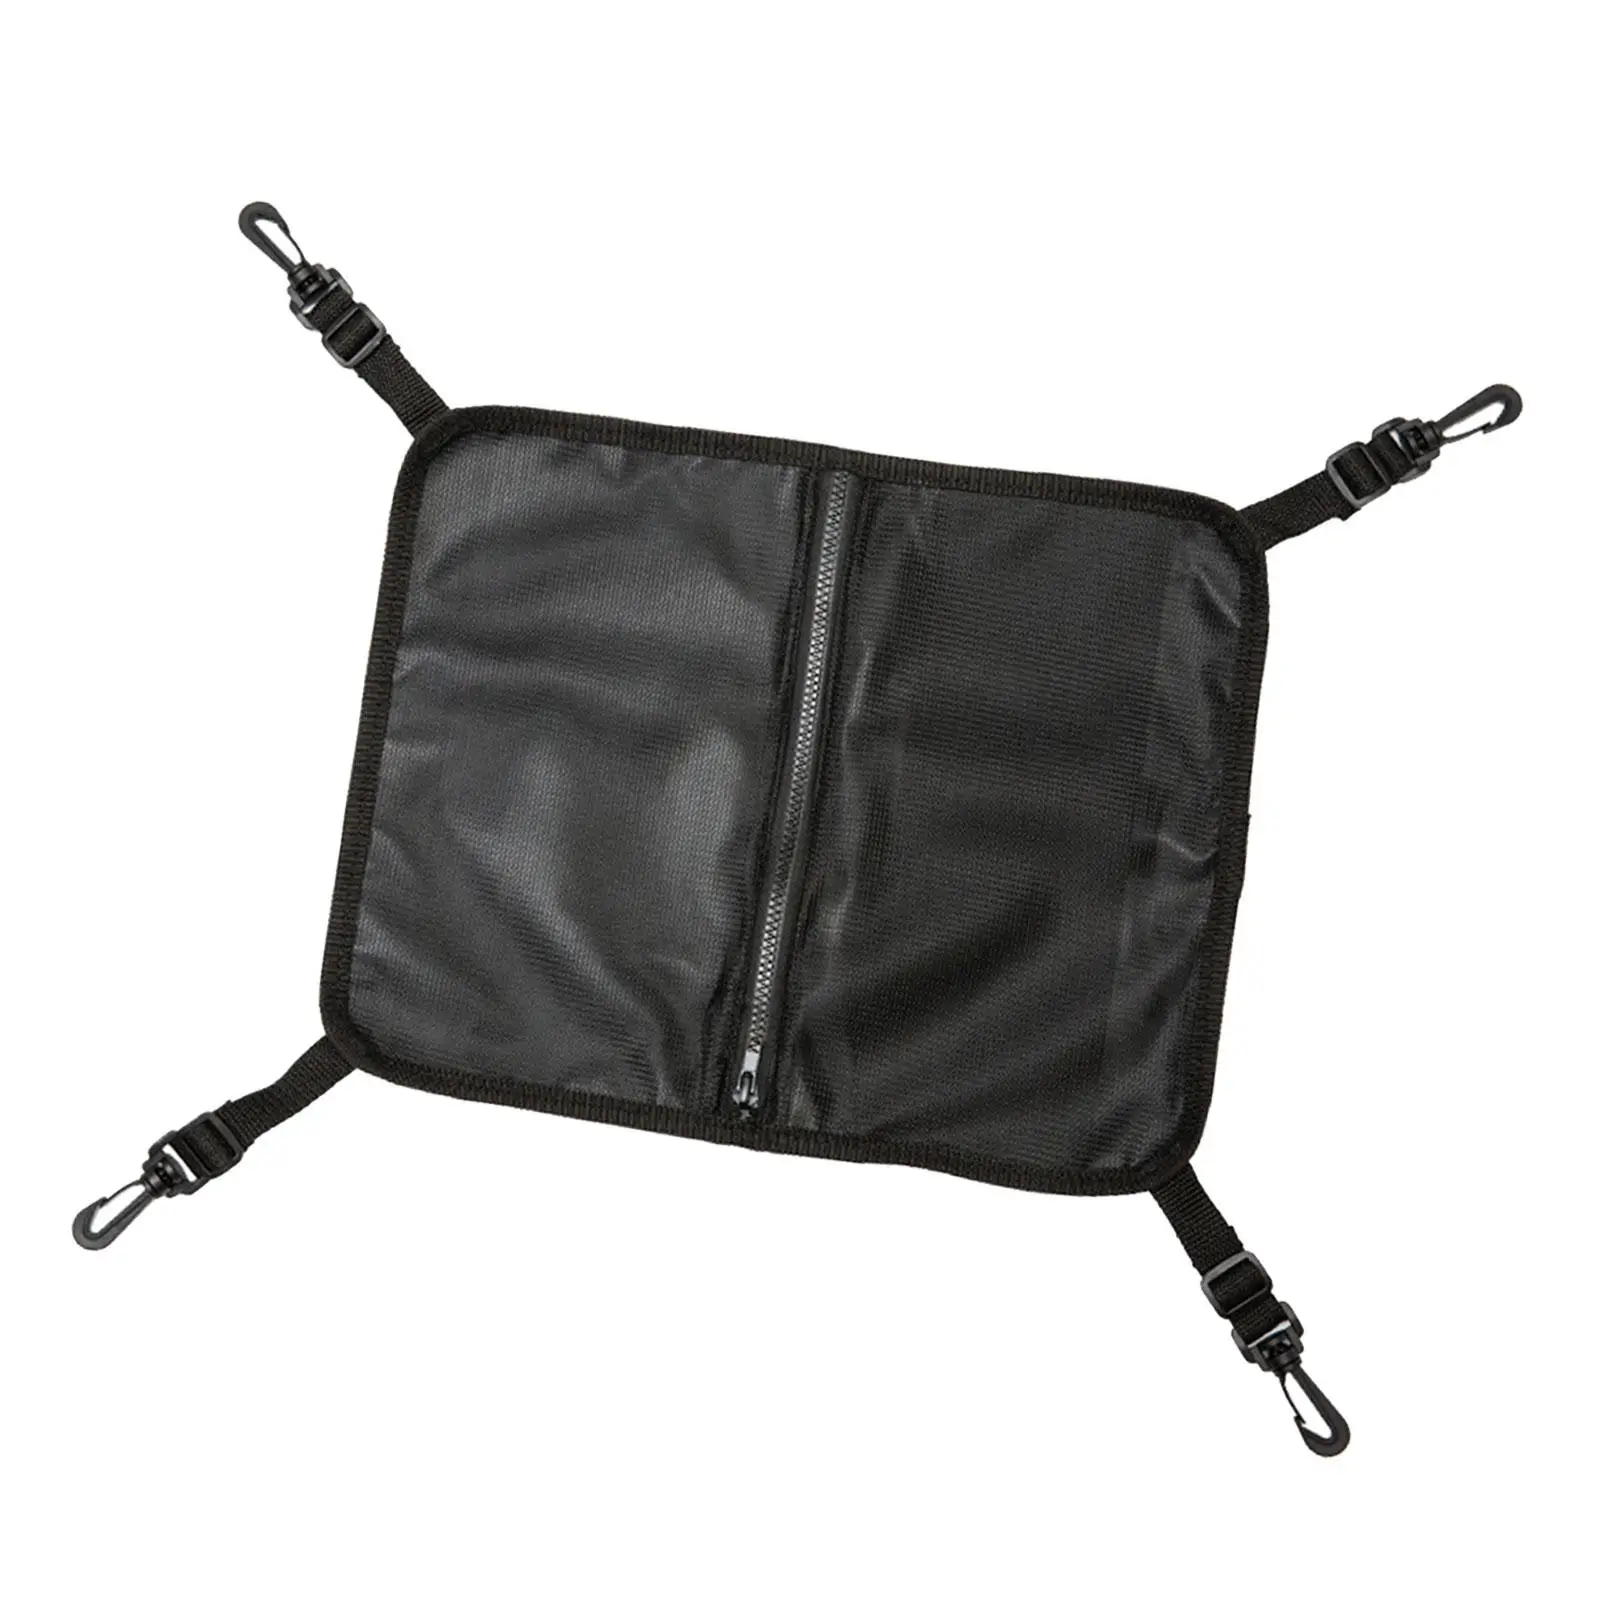 Mesh Deck Bag for Kayak Mesh Storage Bag Polyester Bag Inflatable Paddle Board Deck Bag for Surfboard Dinghy Boat Kayak Rafting